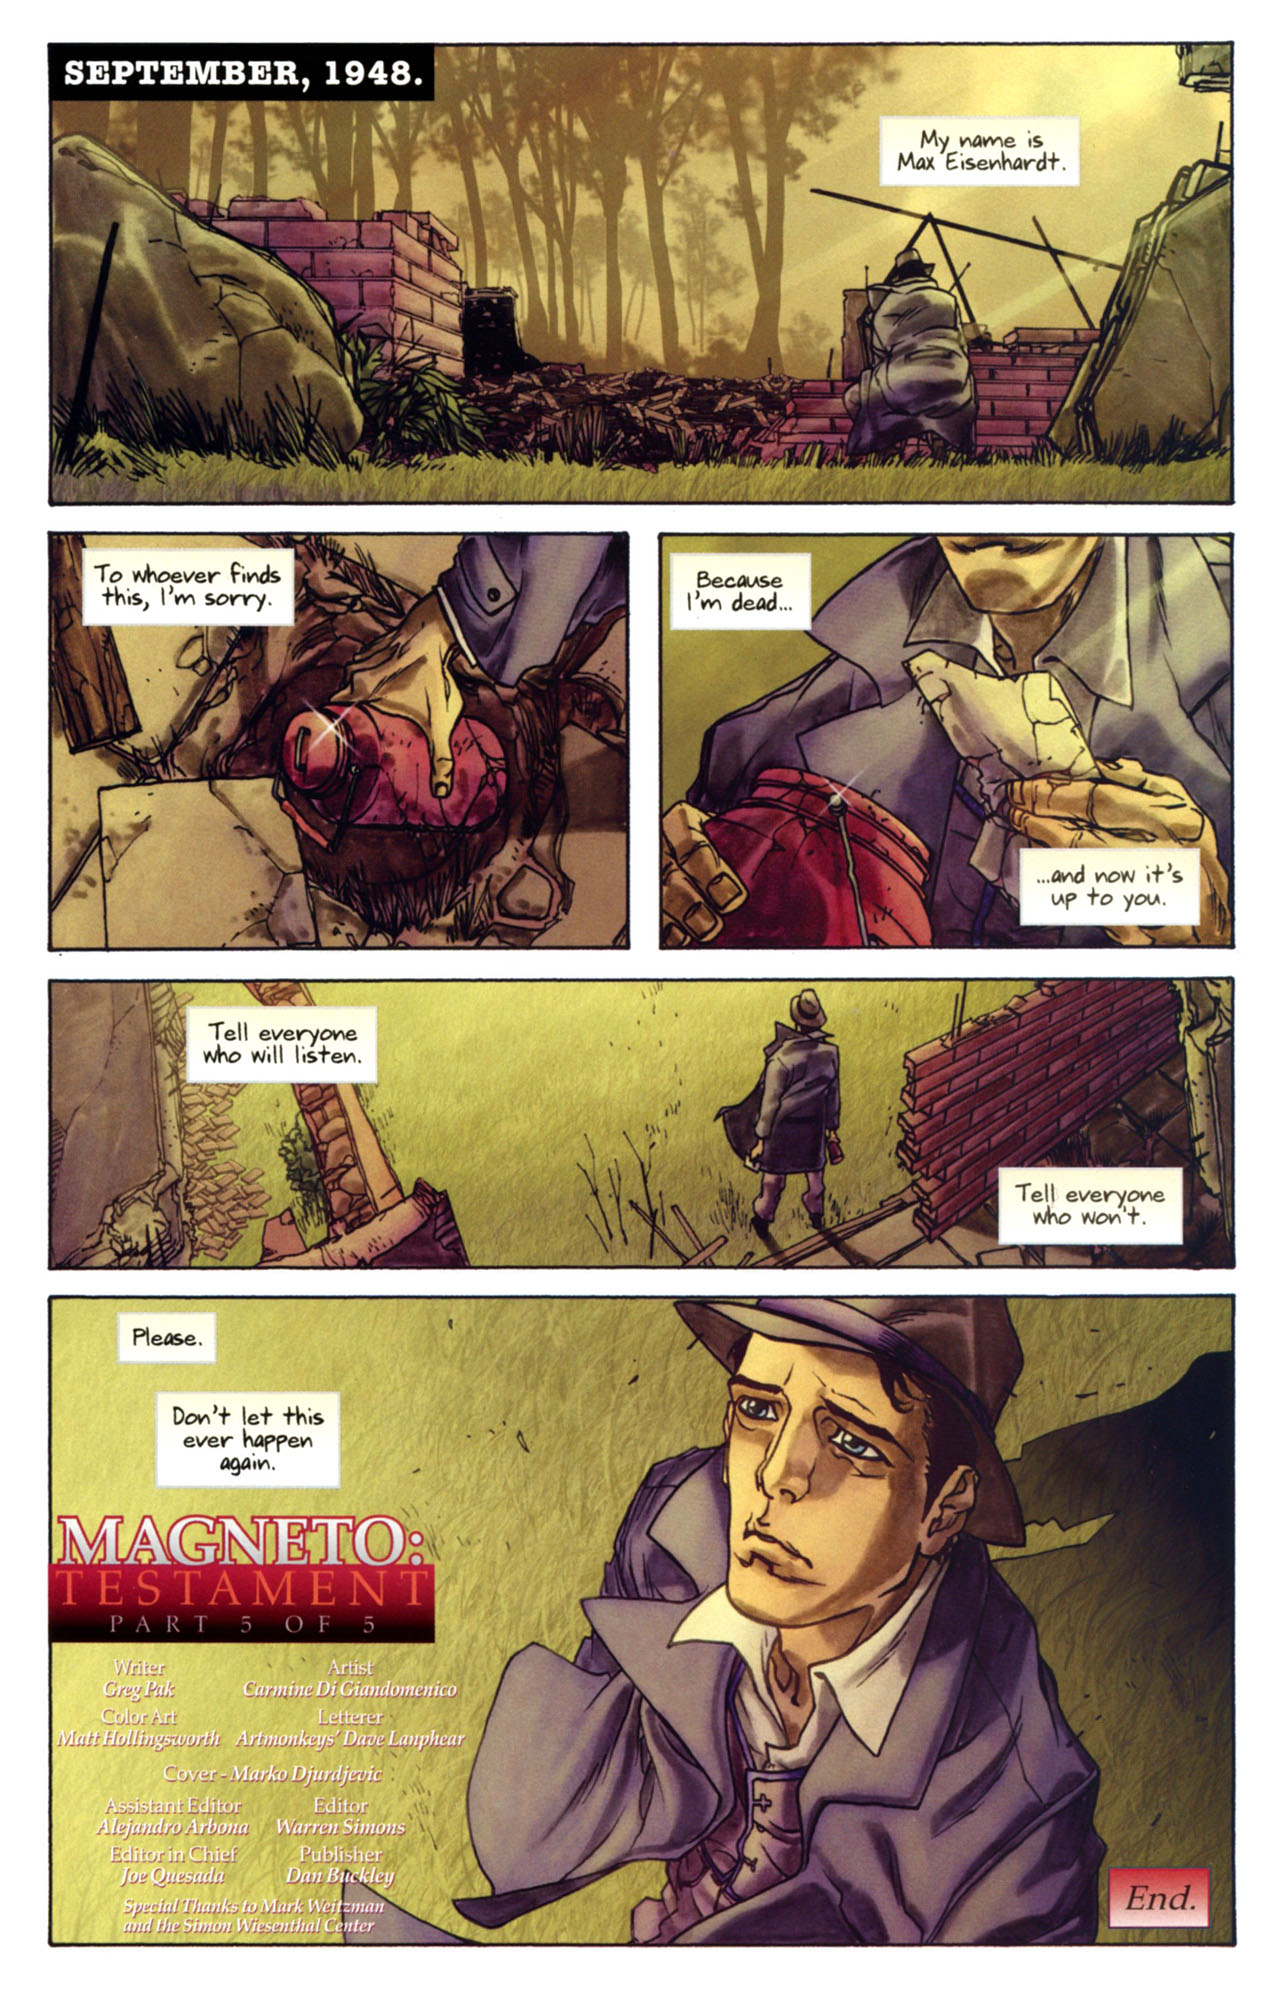 X-Men: Magneto Testament #5 - Part 5 of 5: Conclusion 